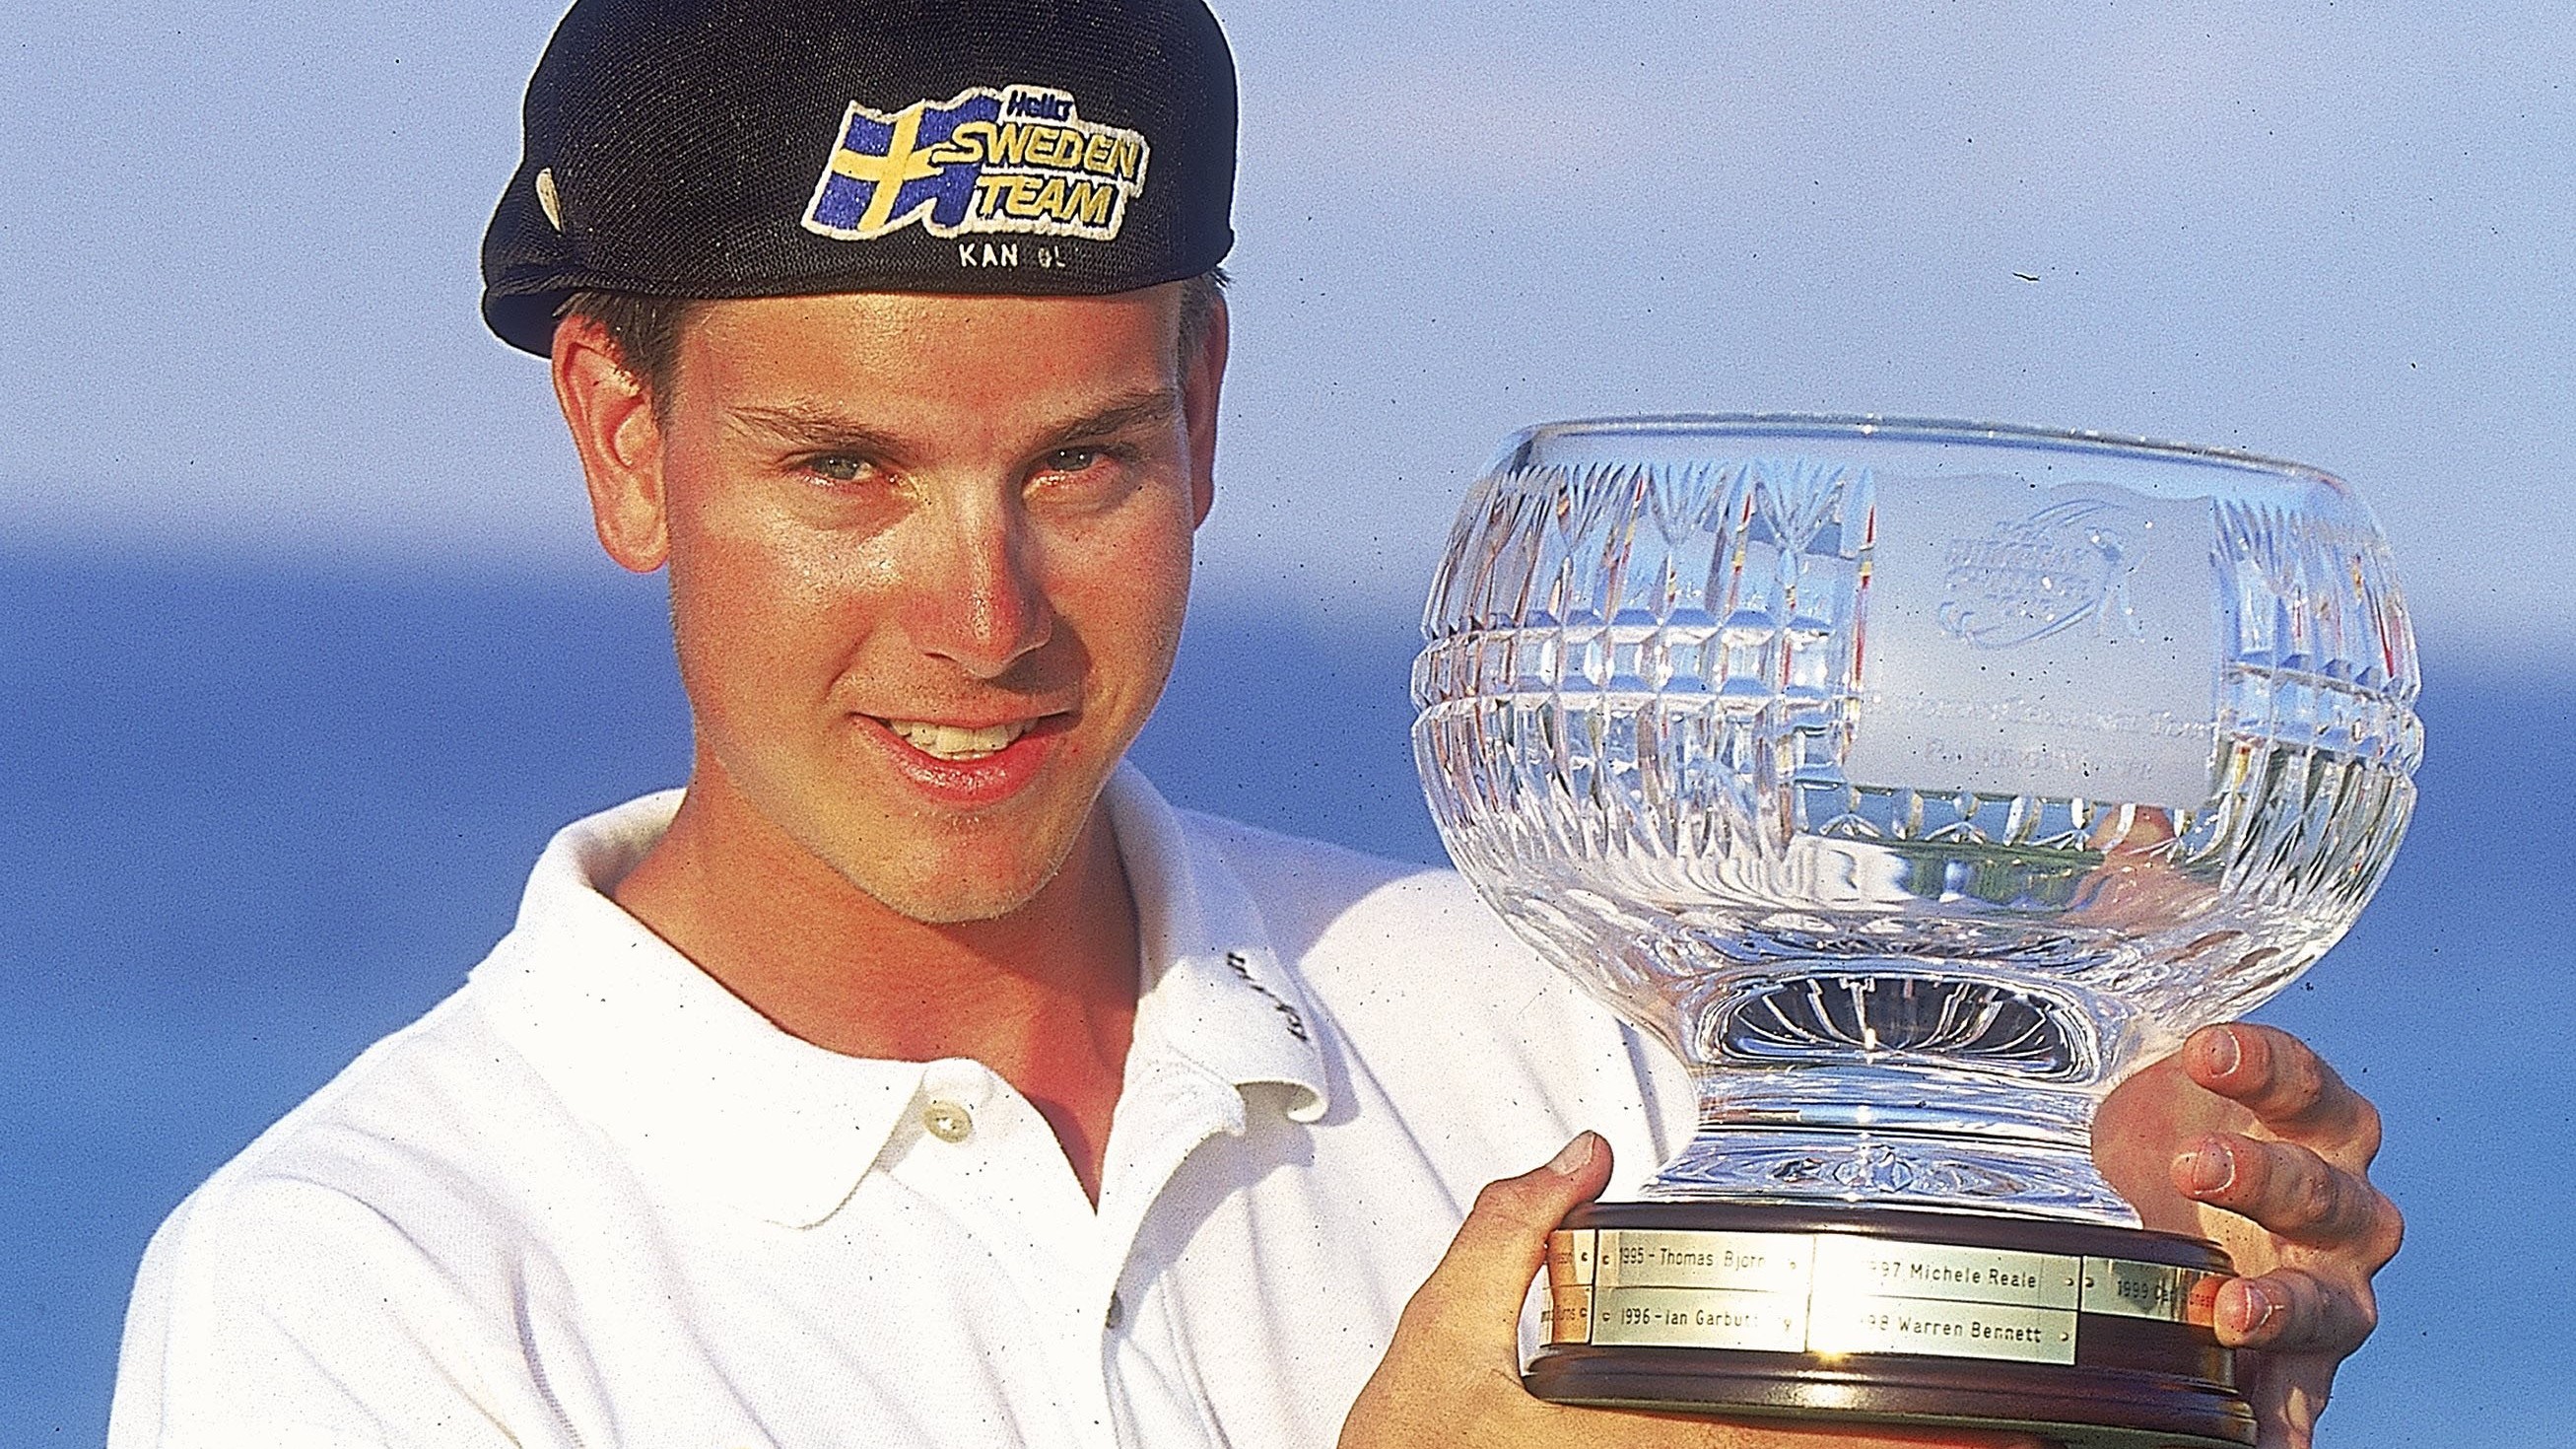 Bekanntes Gesicht: Henrik Stenson gewann die Serie der Challenge Tour 2000. © Paul Severn/Getty Images